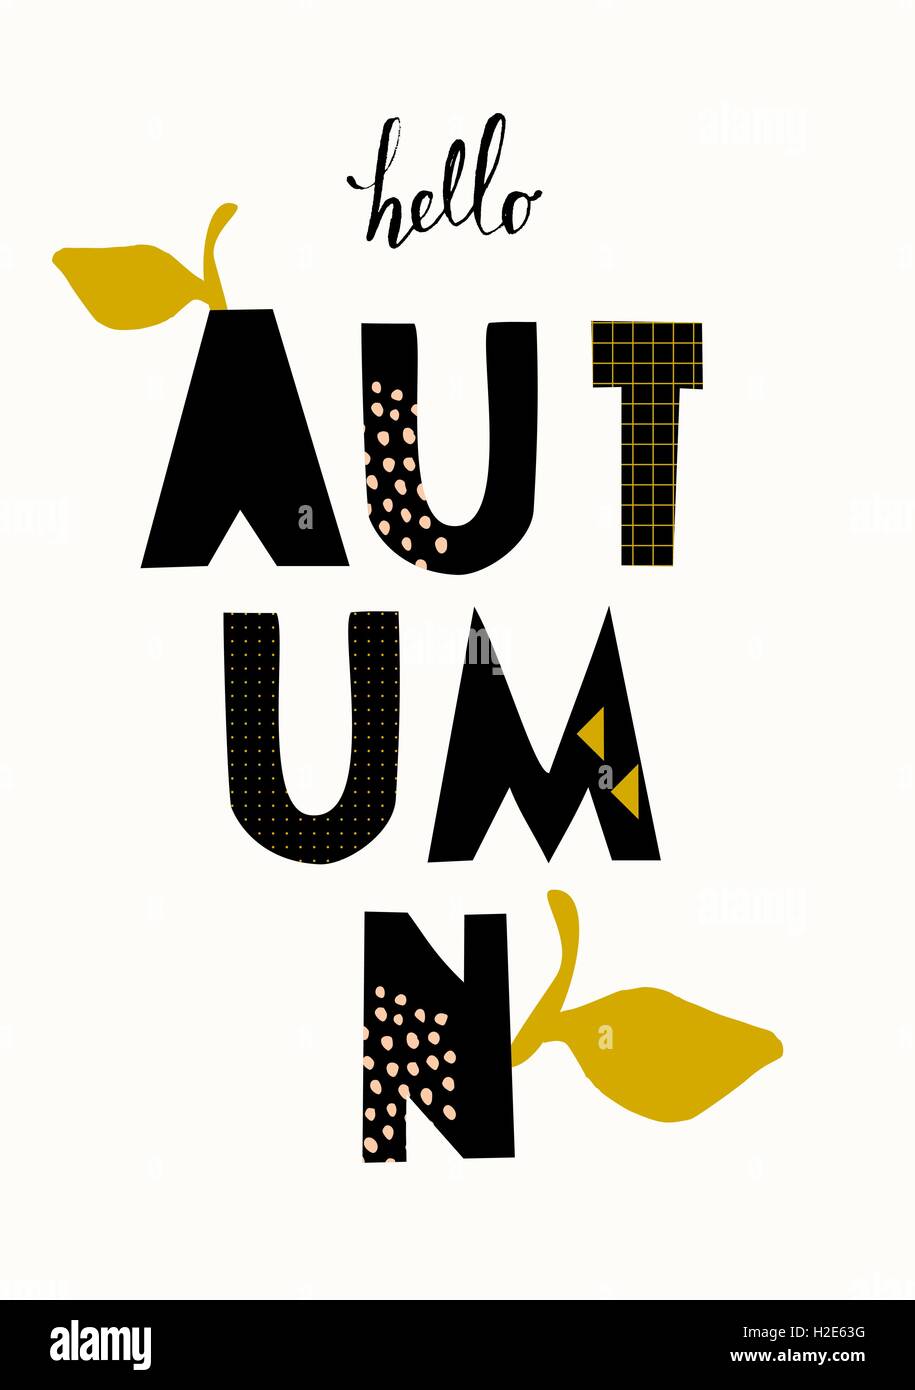 Typografischen Stildesign für die Herbstsaison mit schwarzen Buchstaben, Blatt Dekoration und geometrische Elemente, isoliert auf weißem bac Stock Vektor